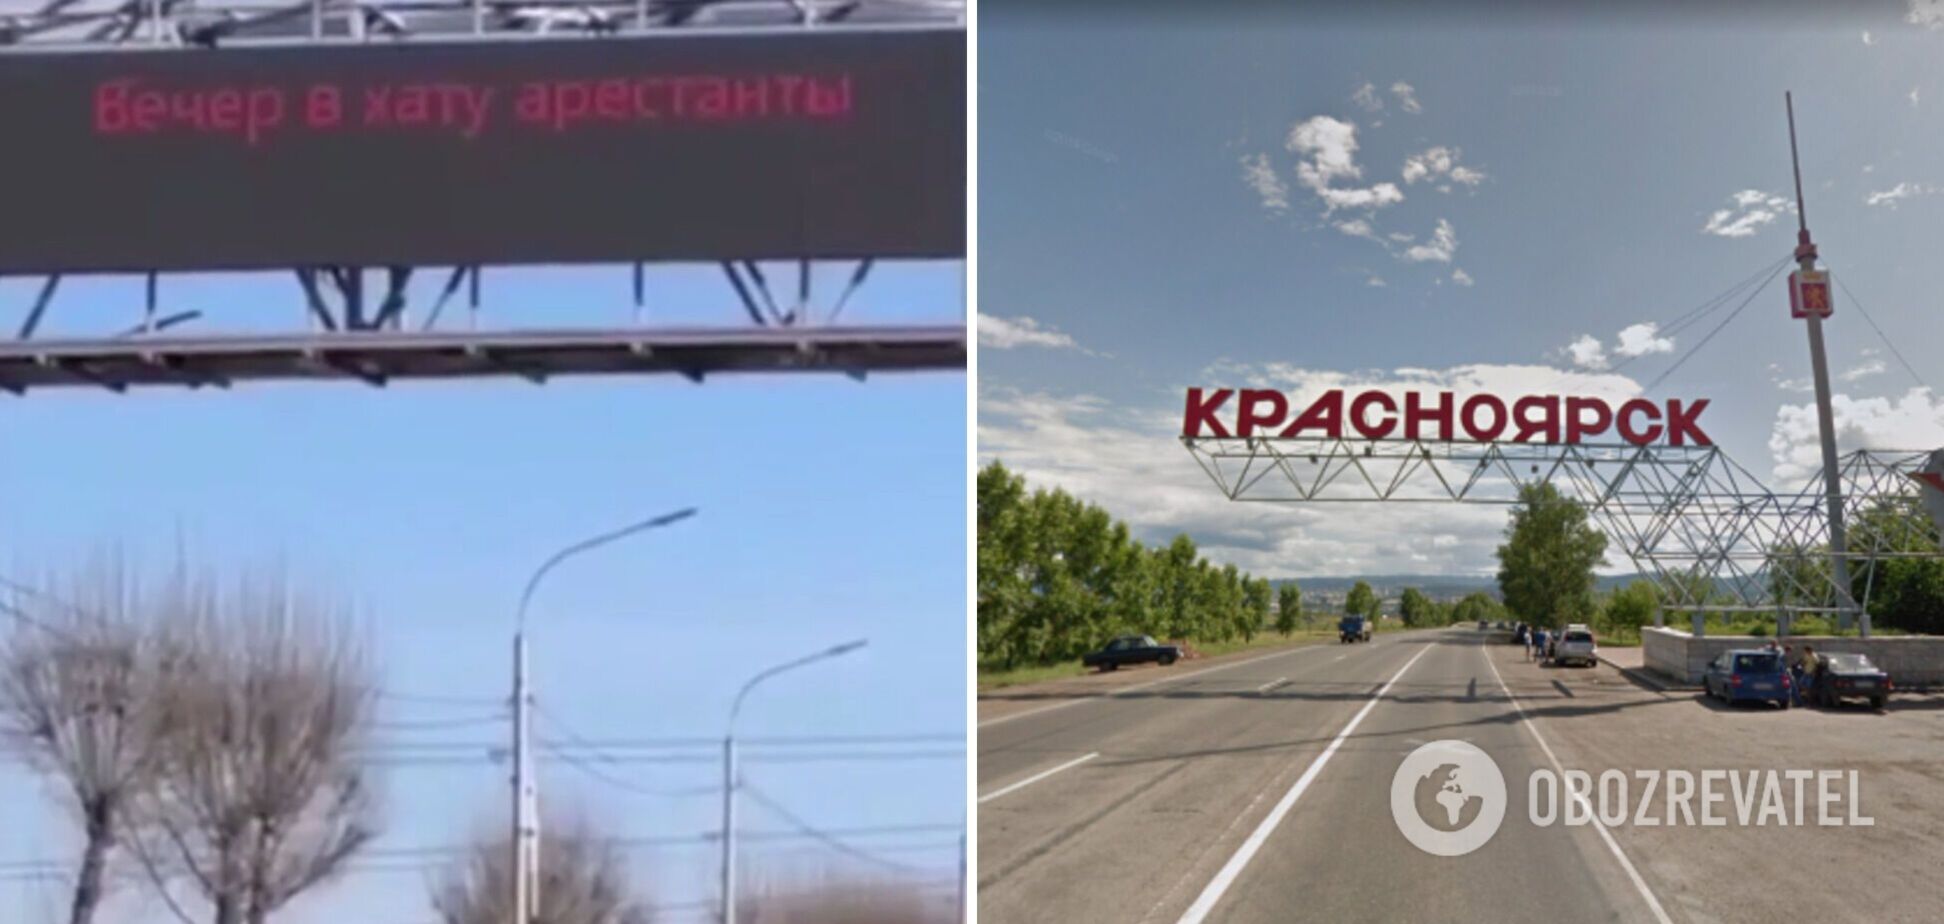 'Вечер в хату, арестанты': на въезде в Красноярск взломали информационное табло, там теперь новая надпись. Видео